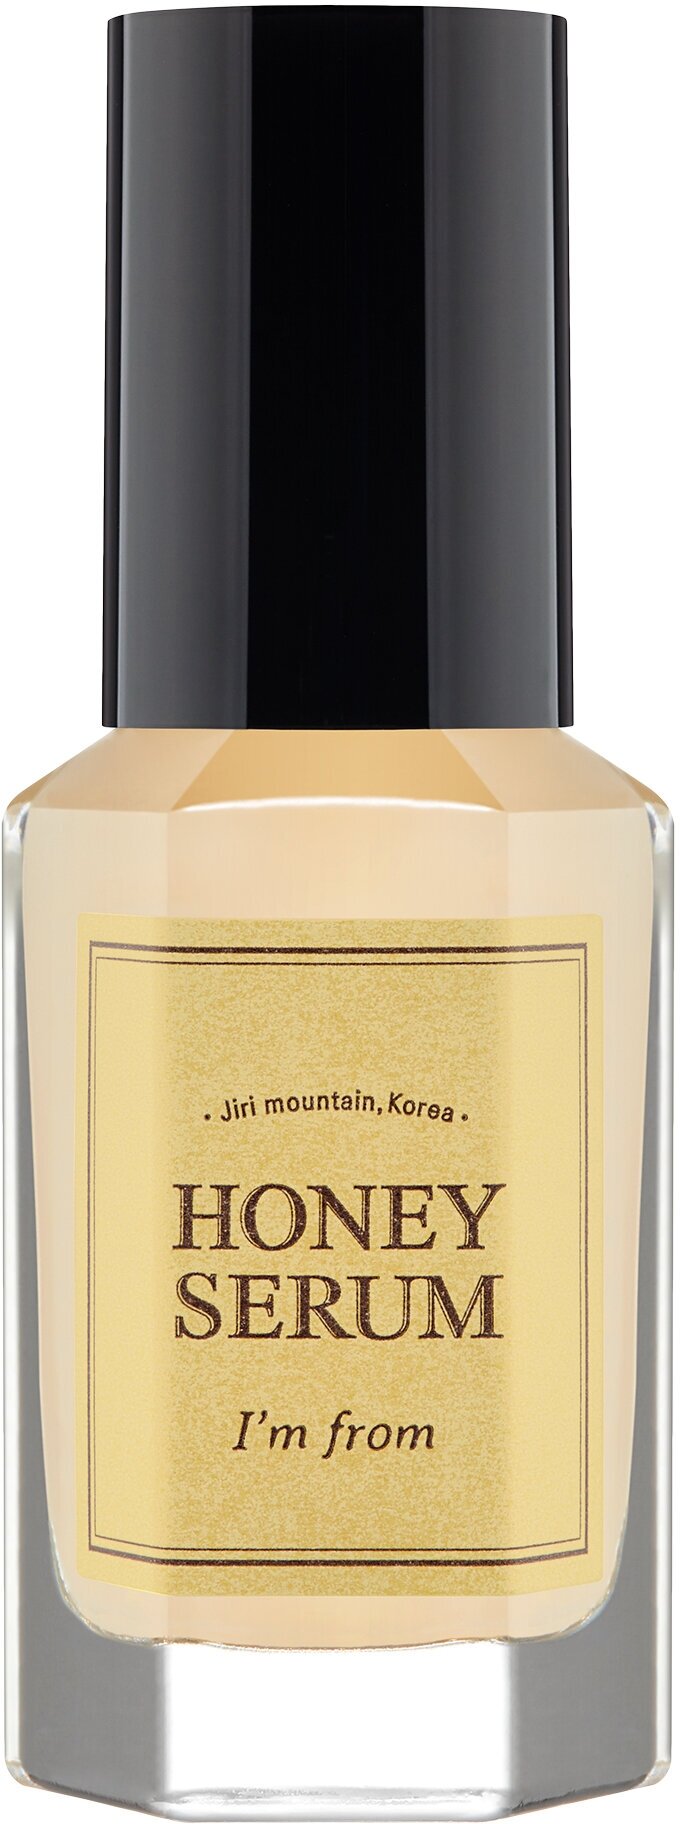 I’m from Питательная сыворотка для лица с медом Honey Serum 30 мл